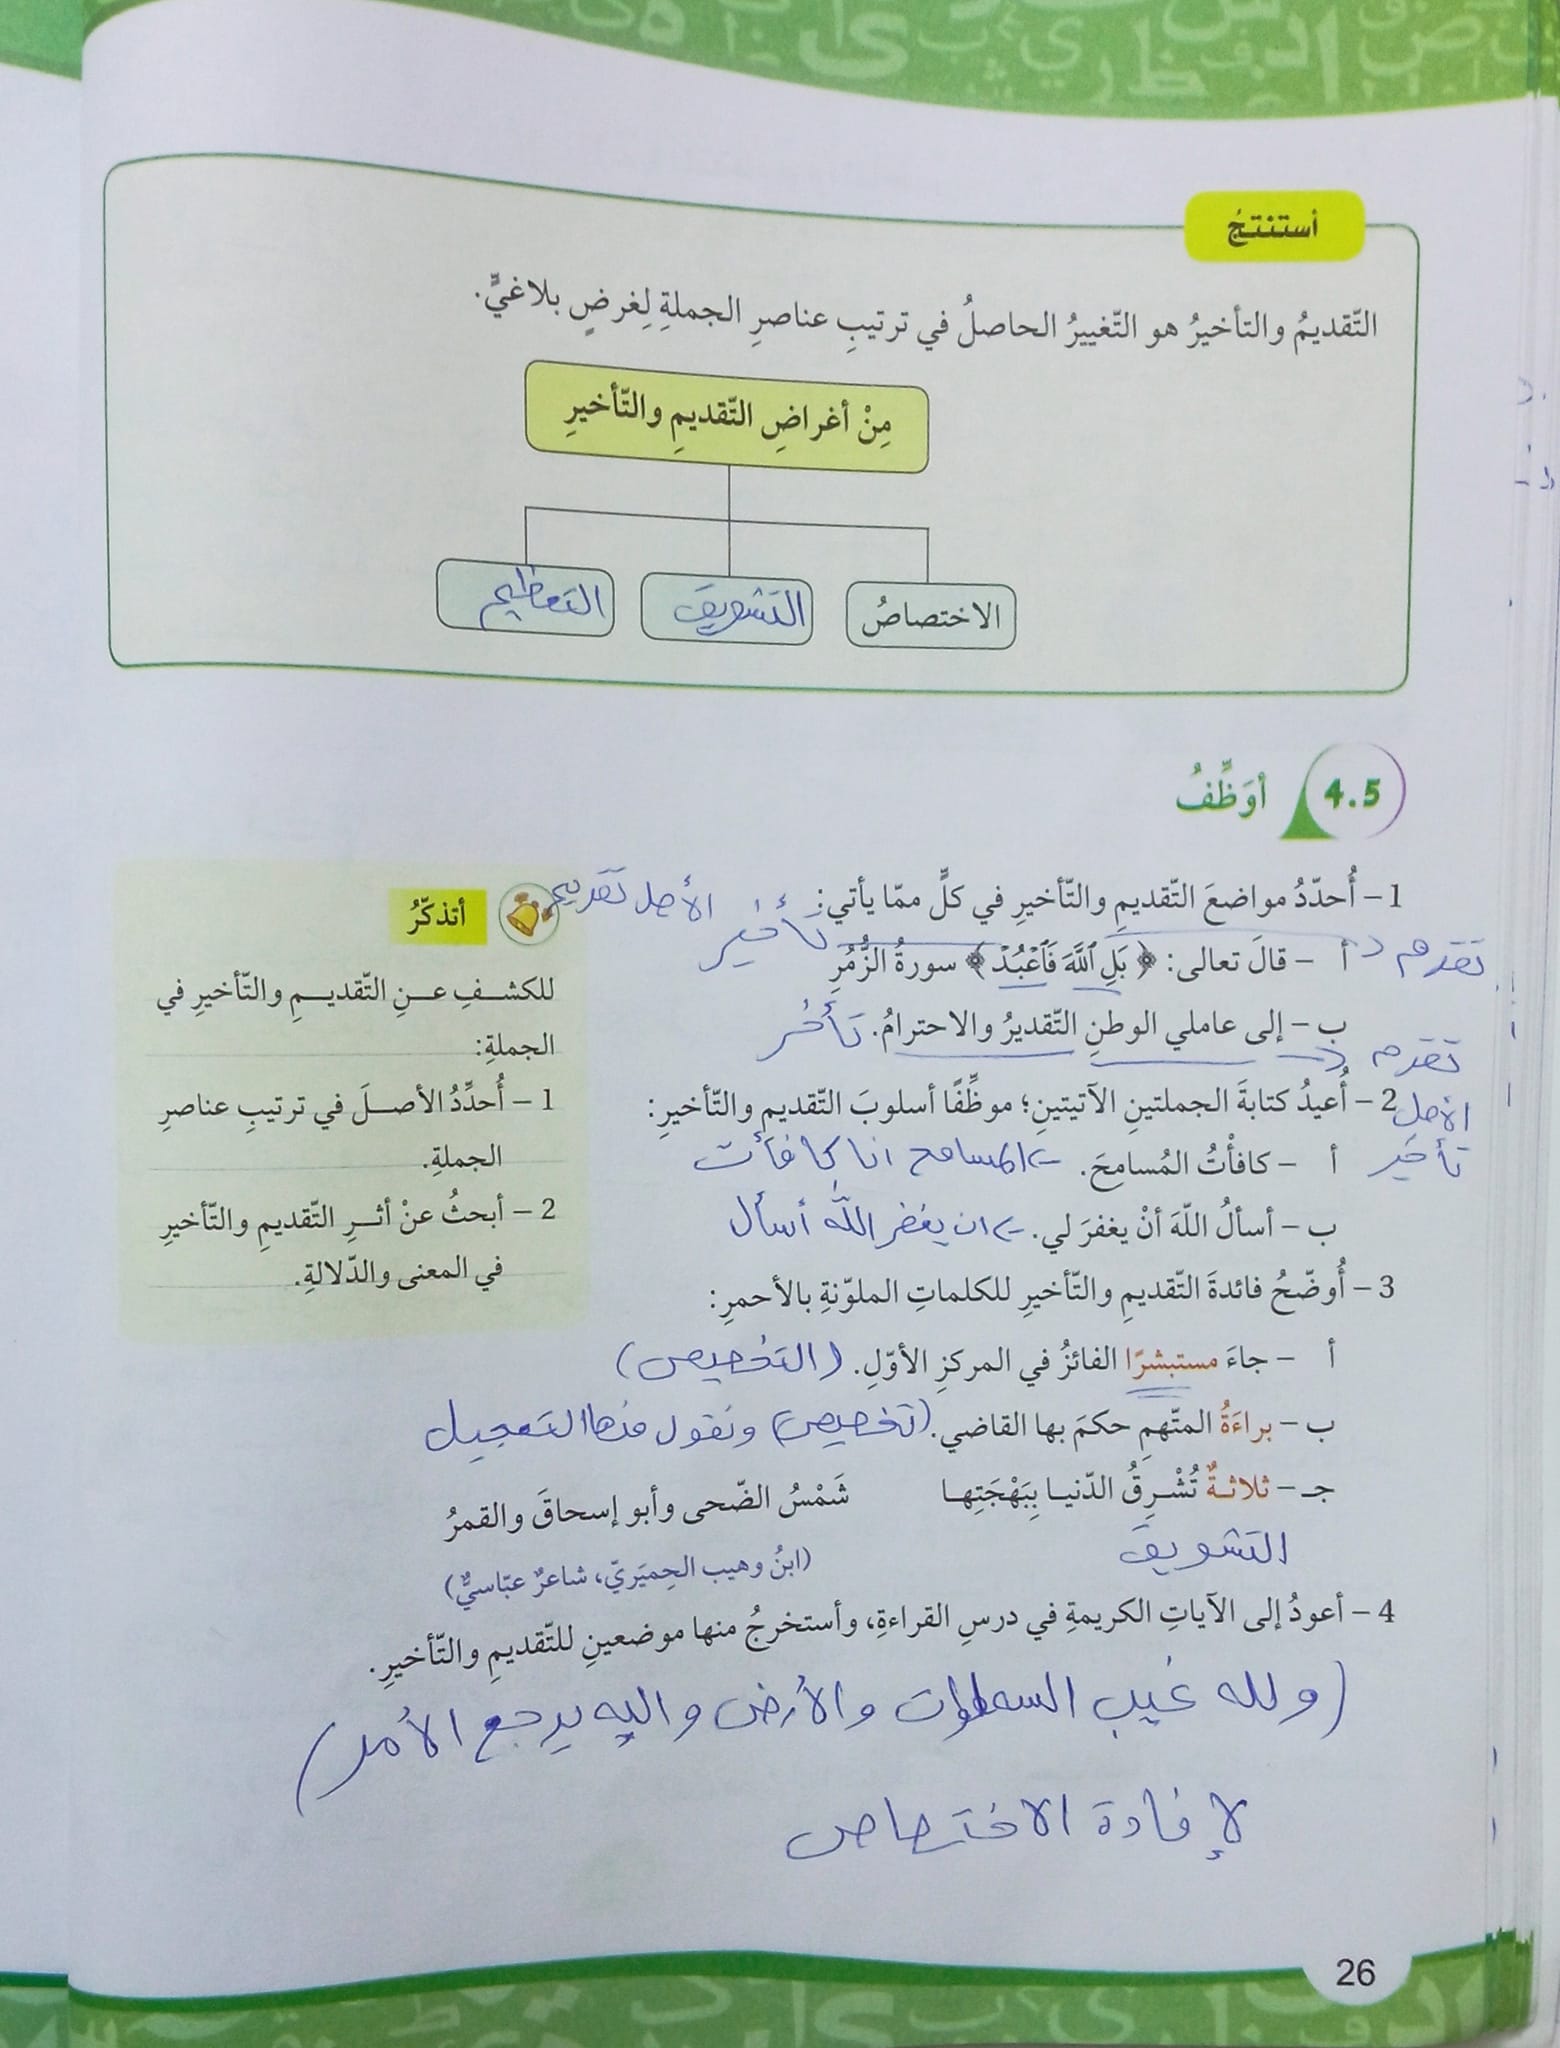 MTEzNDgyMC42NzI4 بالصور شرح قاعدة التقديم و التاخير واجابات اسئلة الكتاب مادة اللغة العربية للصف العاشر الفصل الثاني